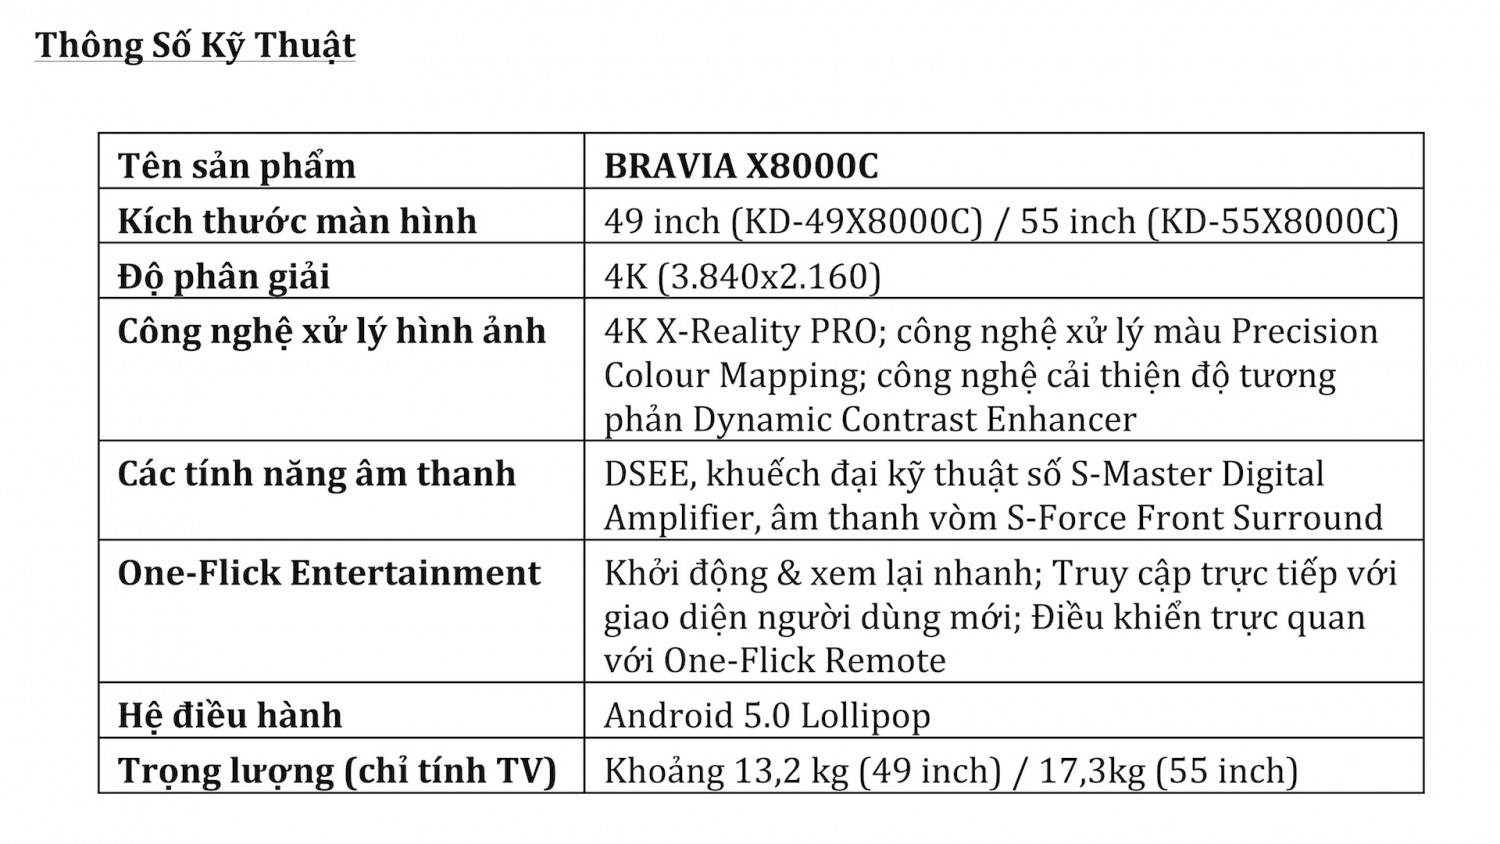 BRAVIA X8000C Press release (1)